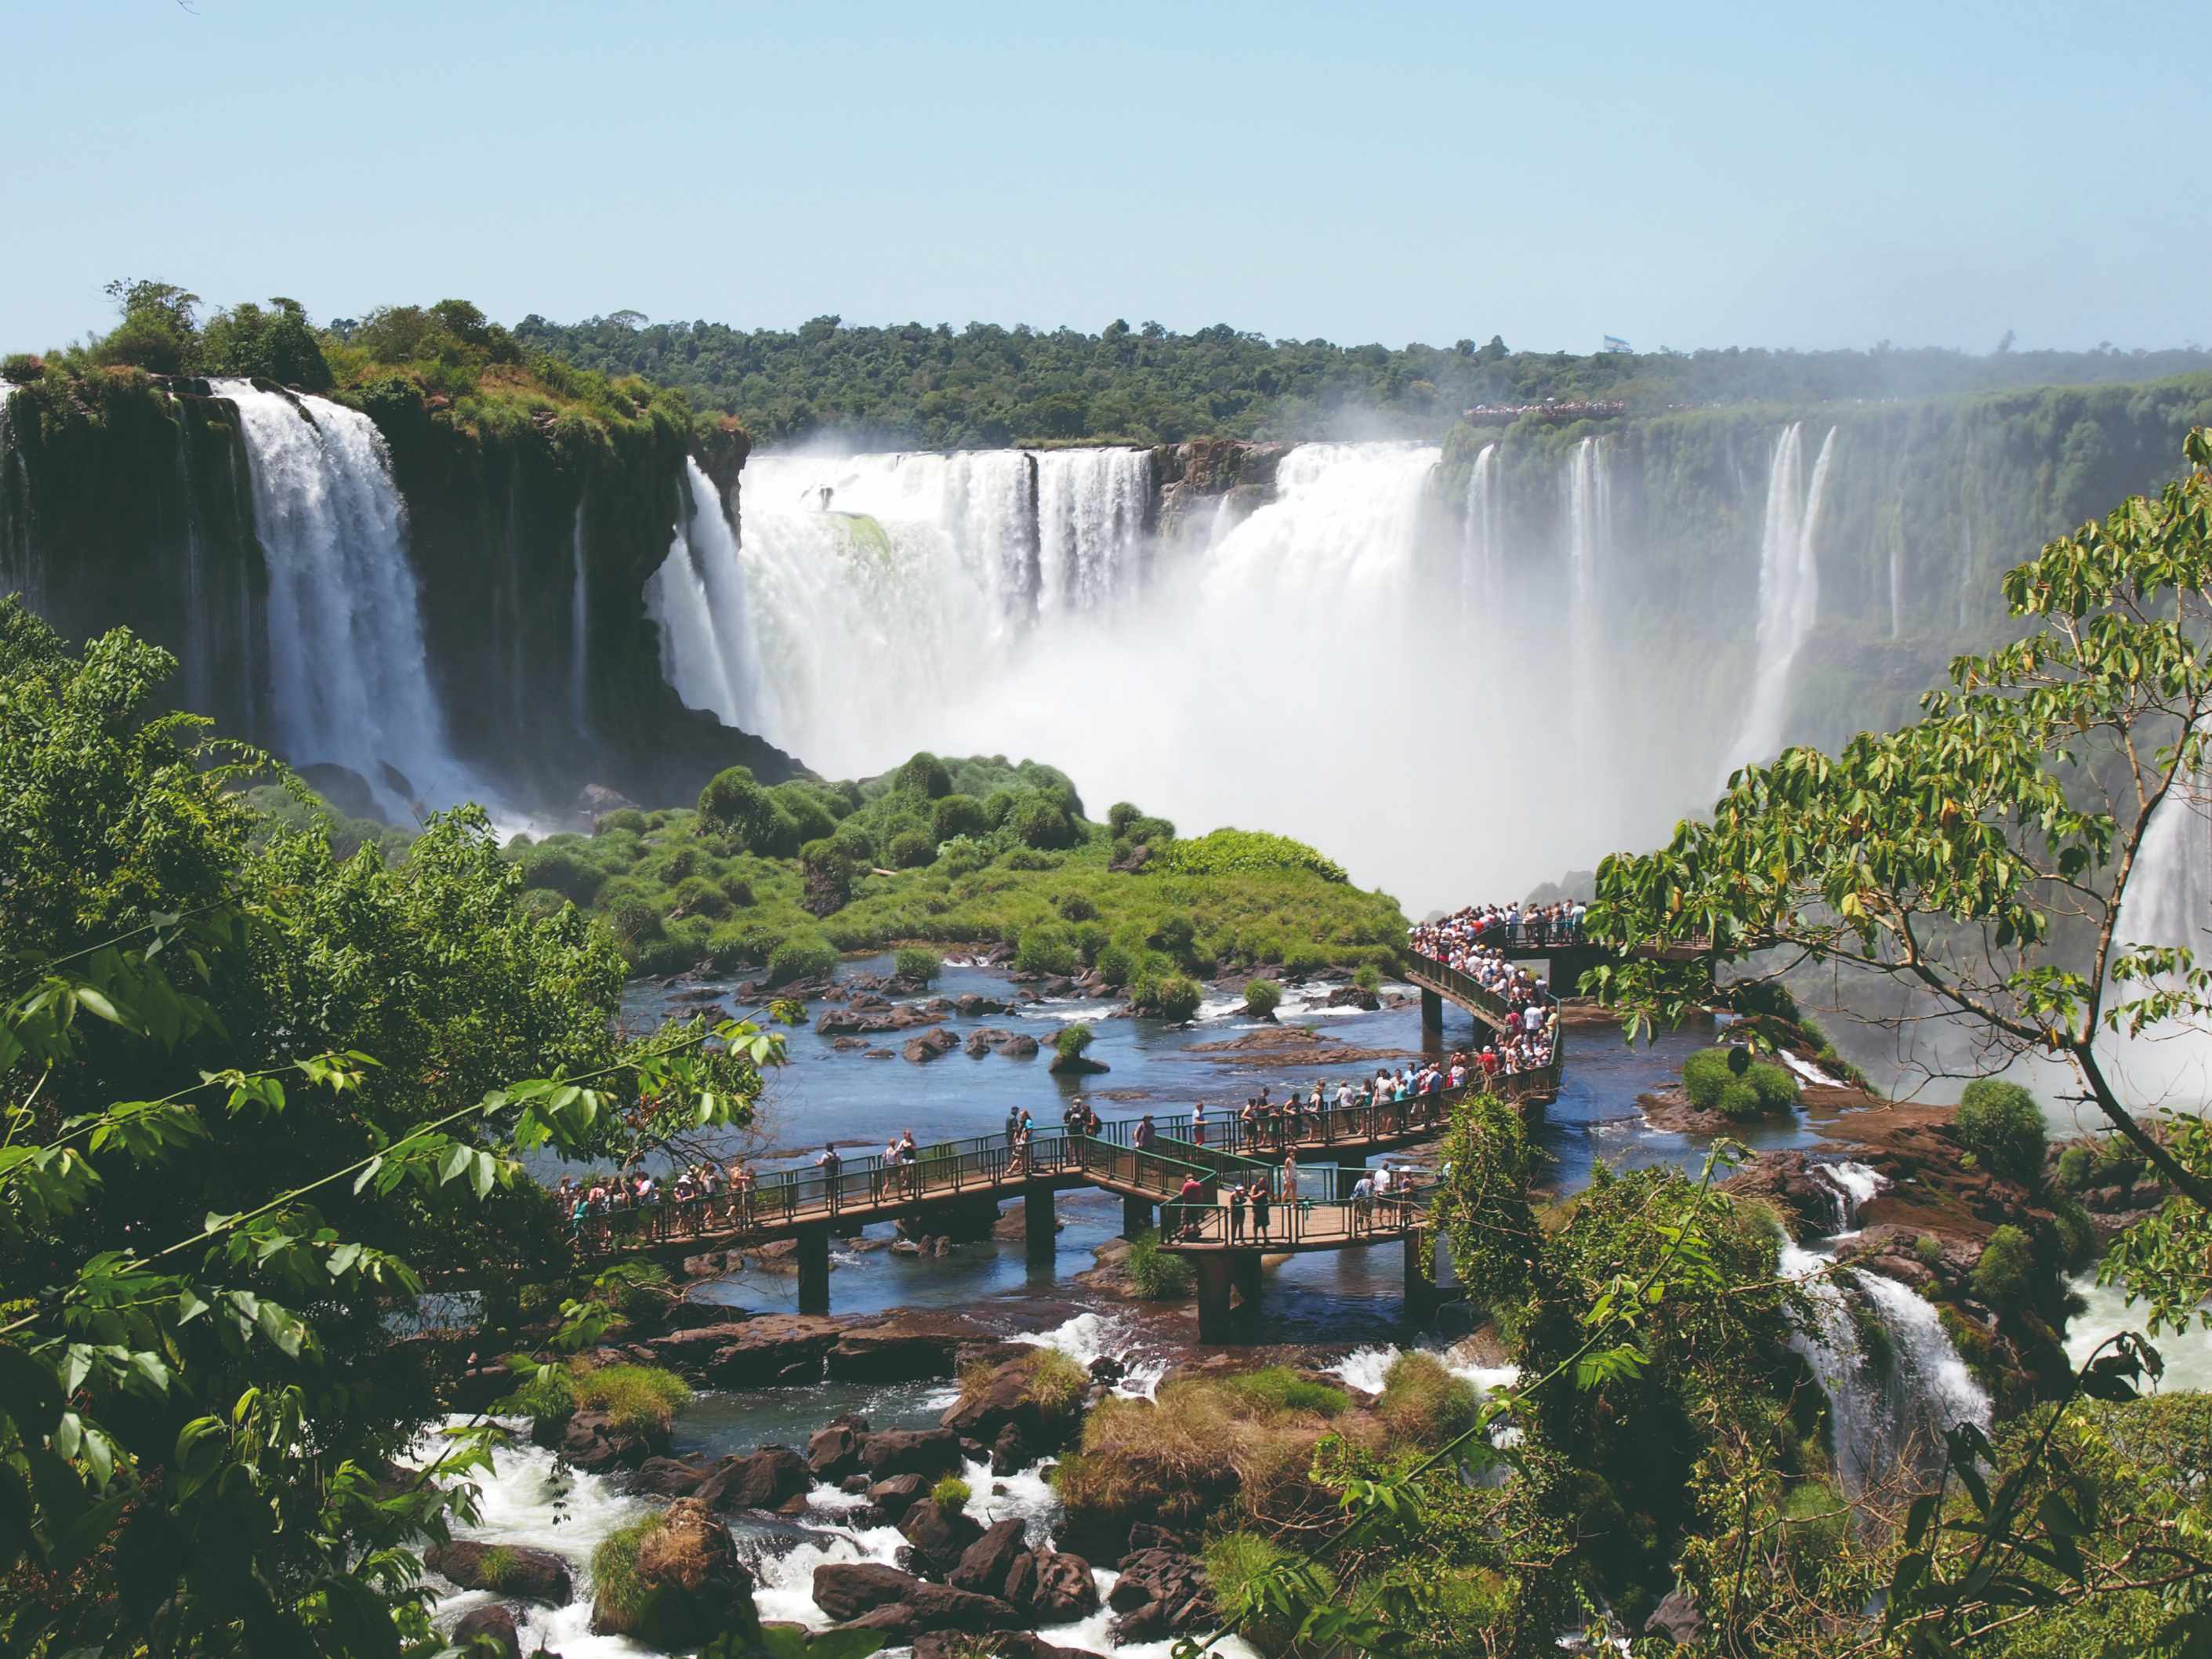 Vue panoramique des chutes argentines du côté brésilien, Foz do Iguaçu (Brésil).